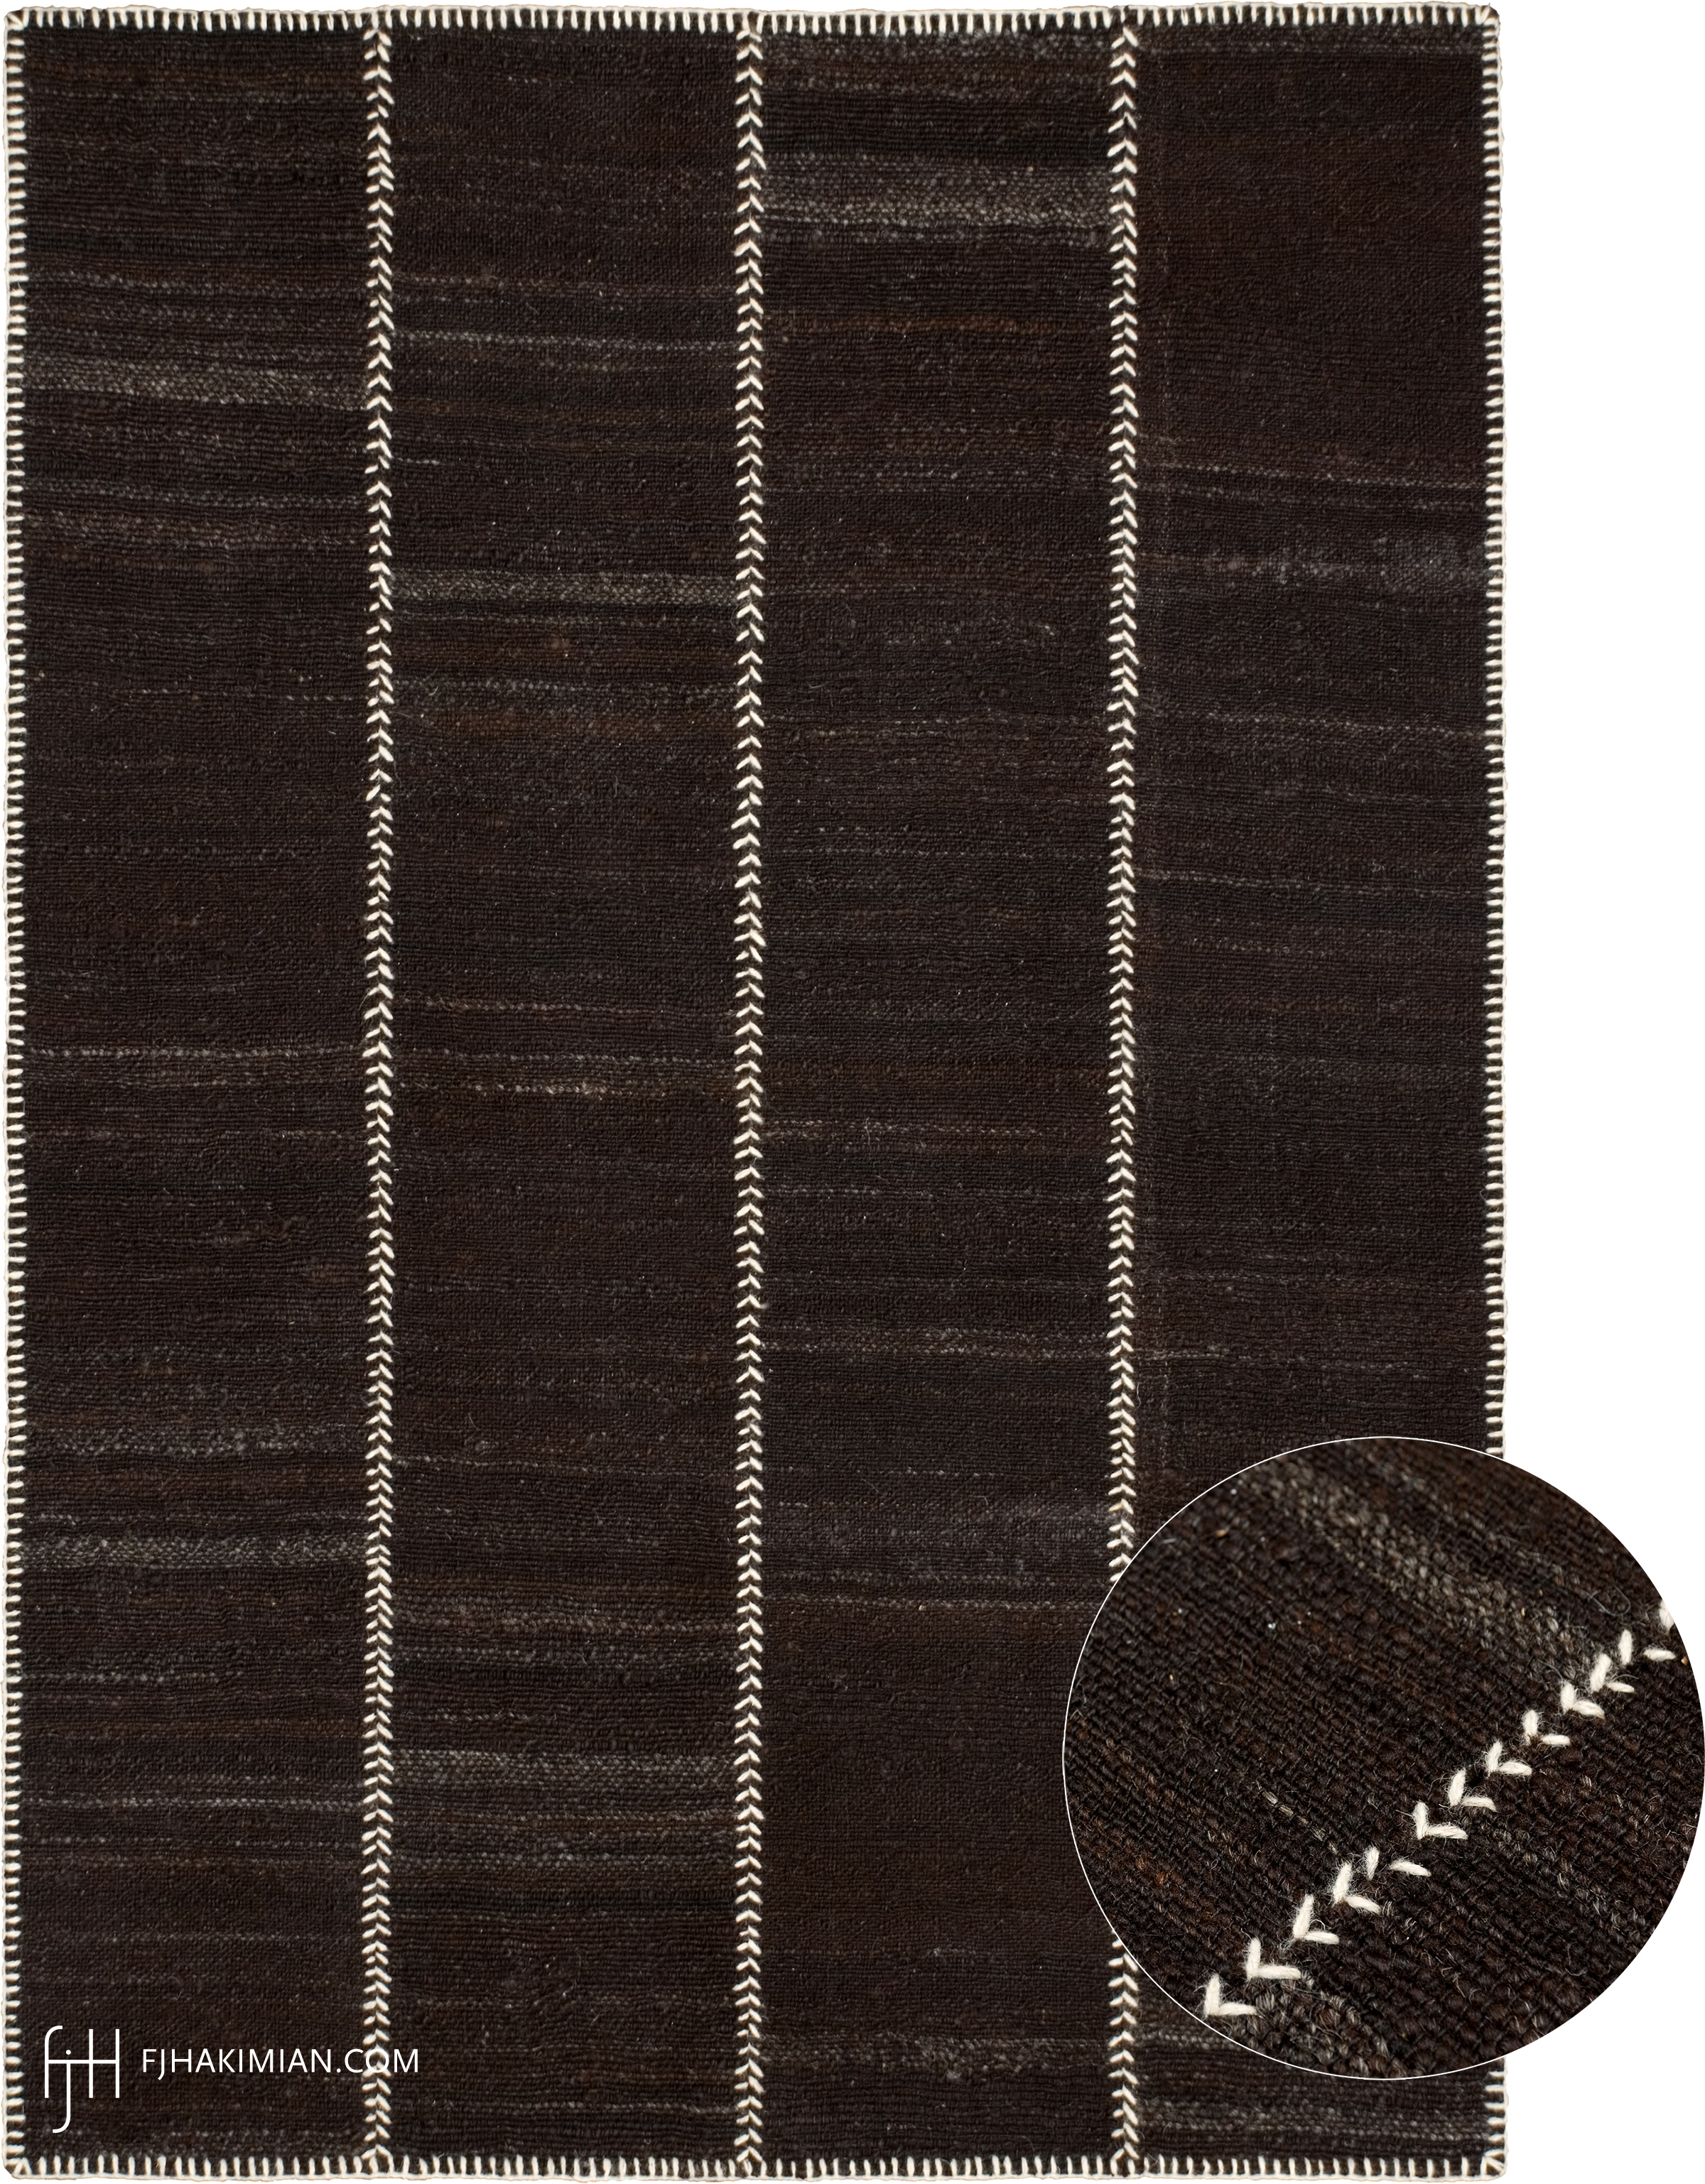 FJ Hakimian | 37325 | Custom Carpet